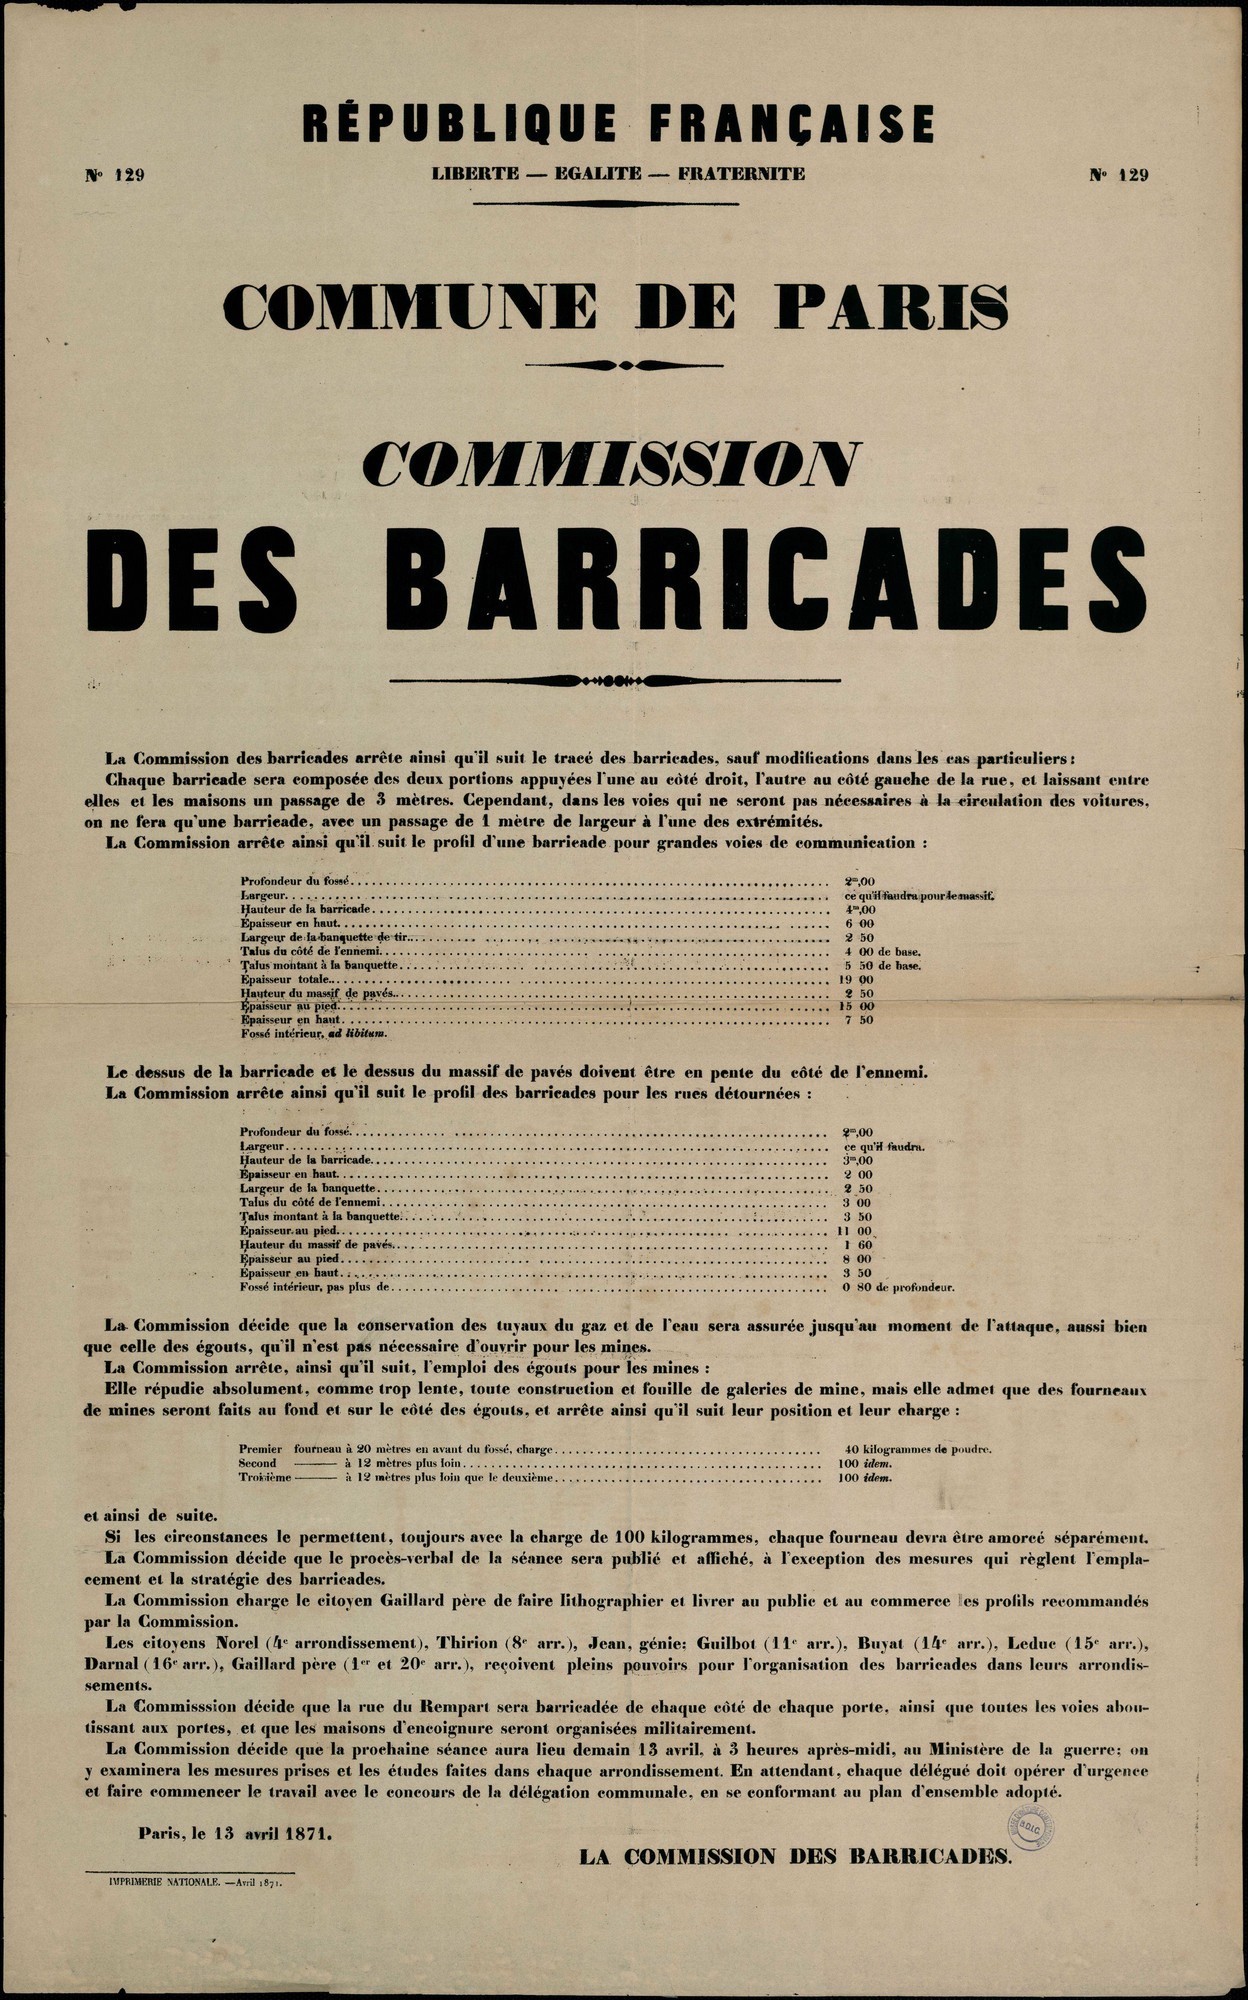 Affiche de la Commune de Paris N°129 du 13 avril 1871 - Commission des barricades (source : La Contemporaine – Nanterre / argonnaute.parisnanterre.fr)